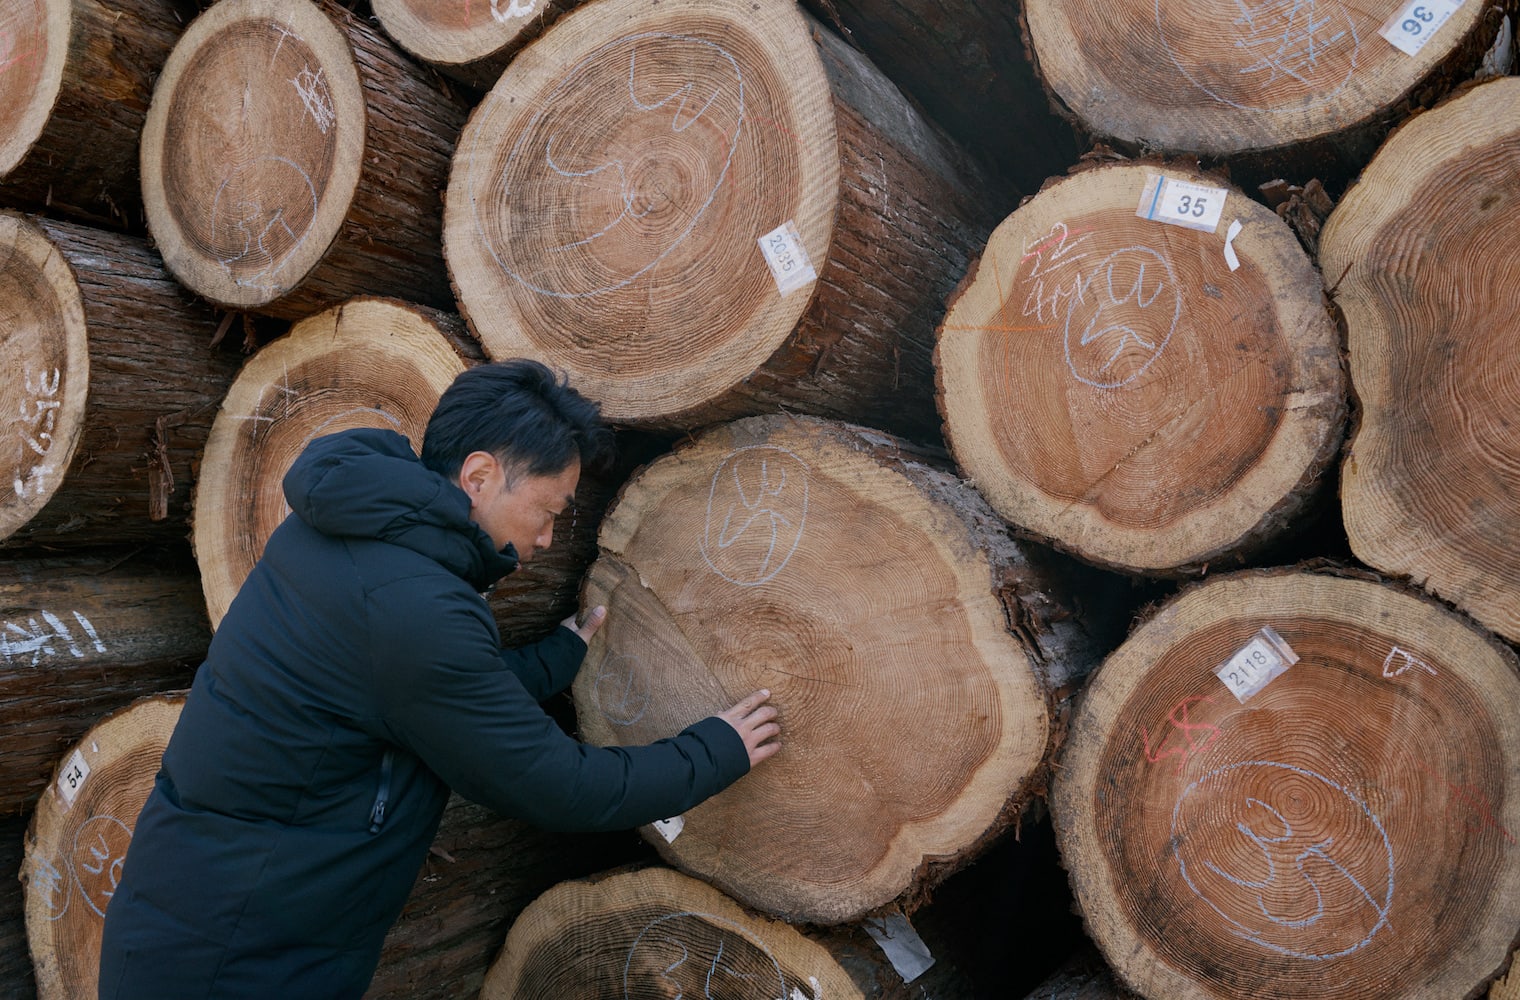 小国杉について解説する俊輔さん。「製造業といわれることもありますが、林業だと思っています」